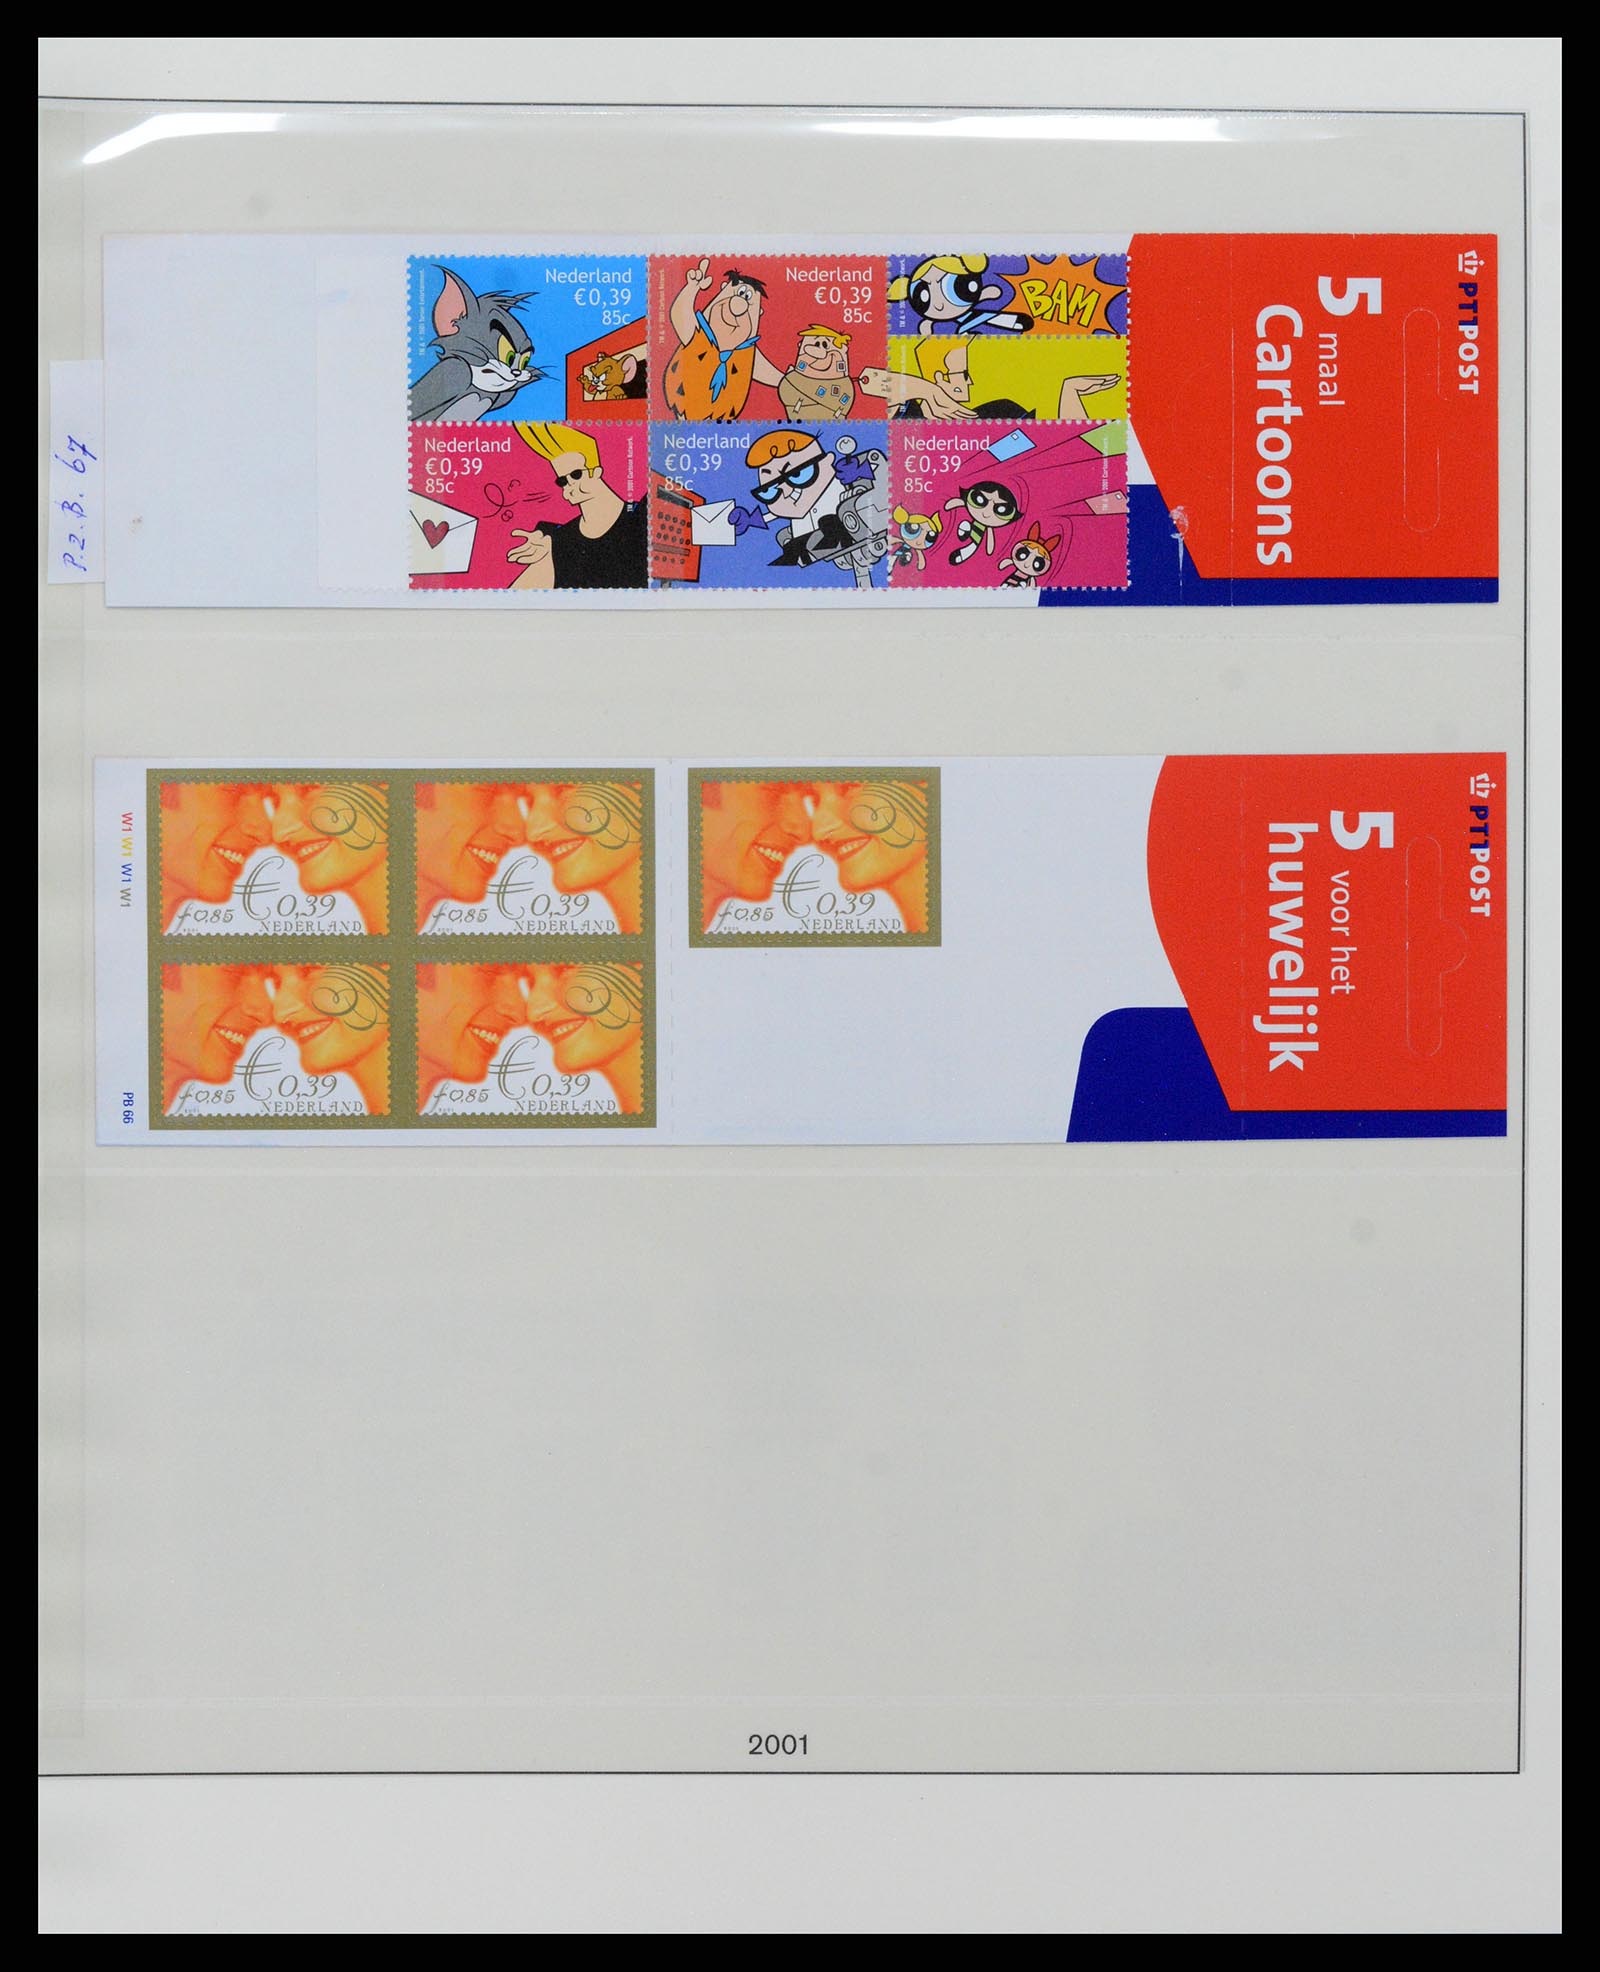 37994 036 - Stamp Collection 37994 Netherlands stampbooklets 1964-2002.